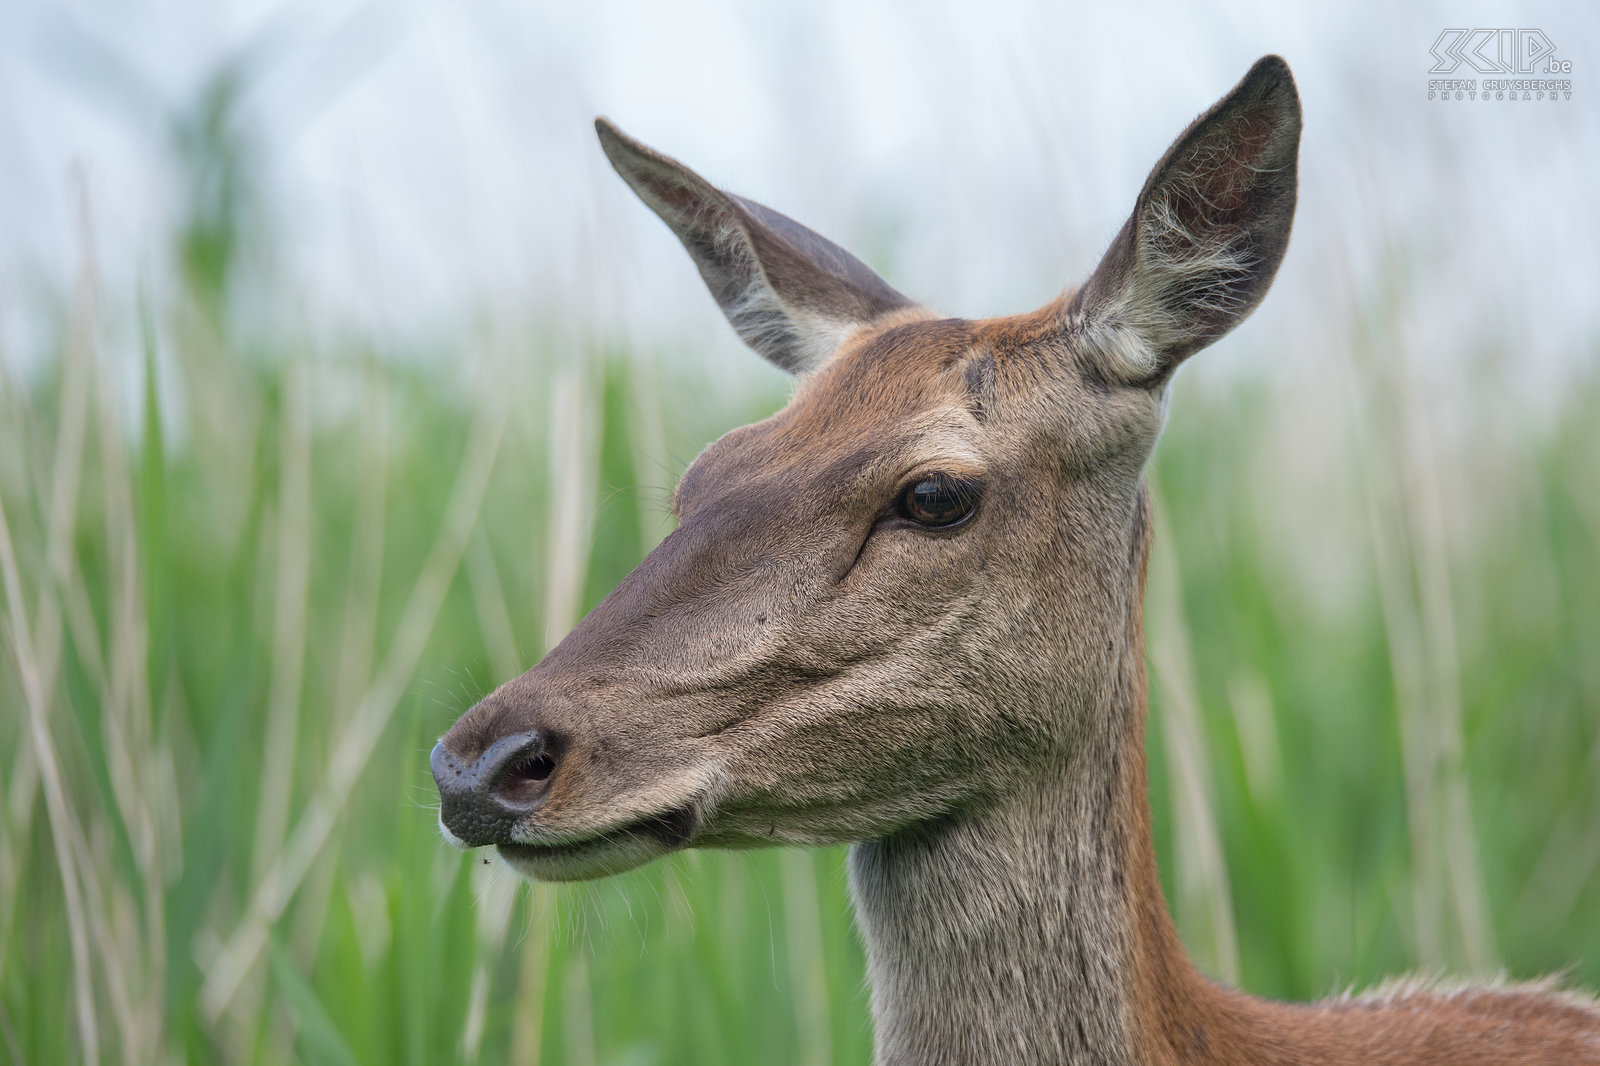 Oostvaardersplassen - Close-up red deer hind Close-up of a red deer hind in the national park Oostvaardersplassen in the Netherlands. Stefan Cruysberghs